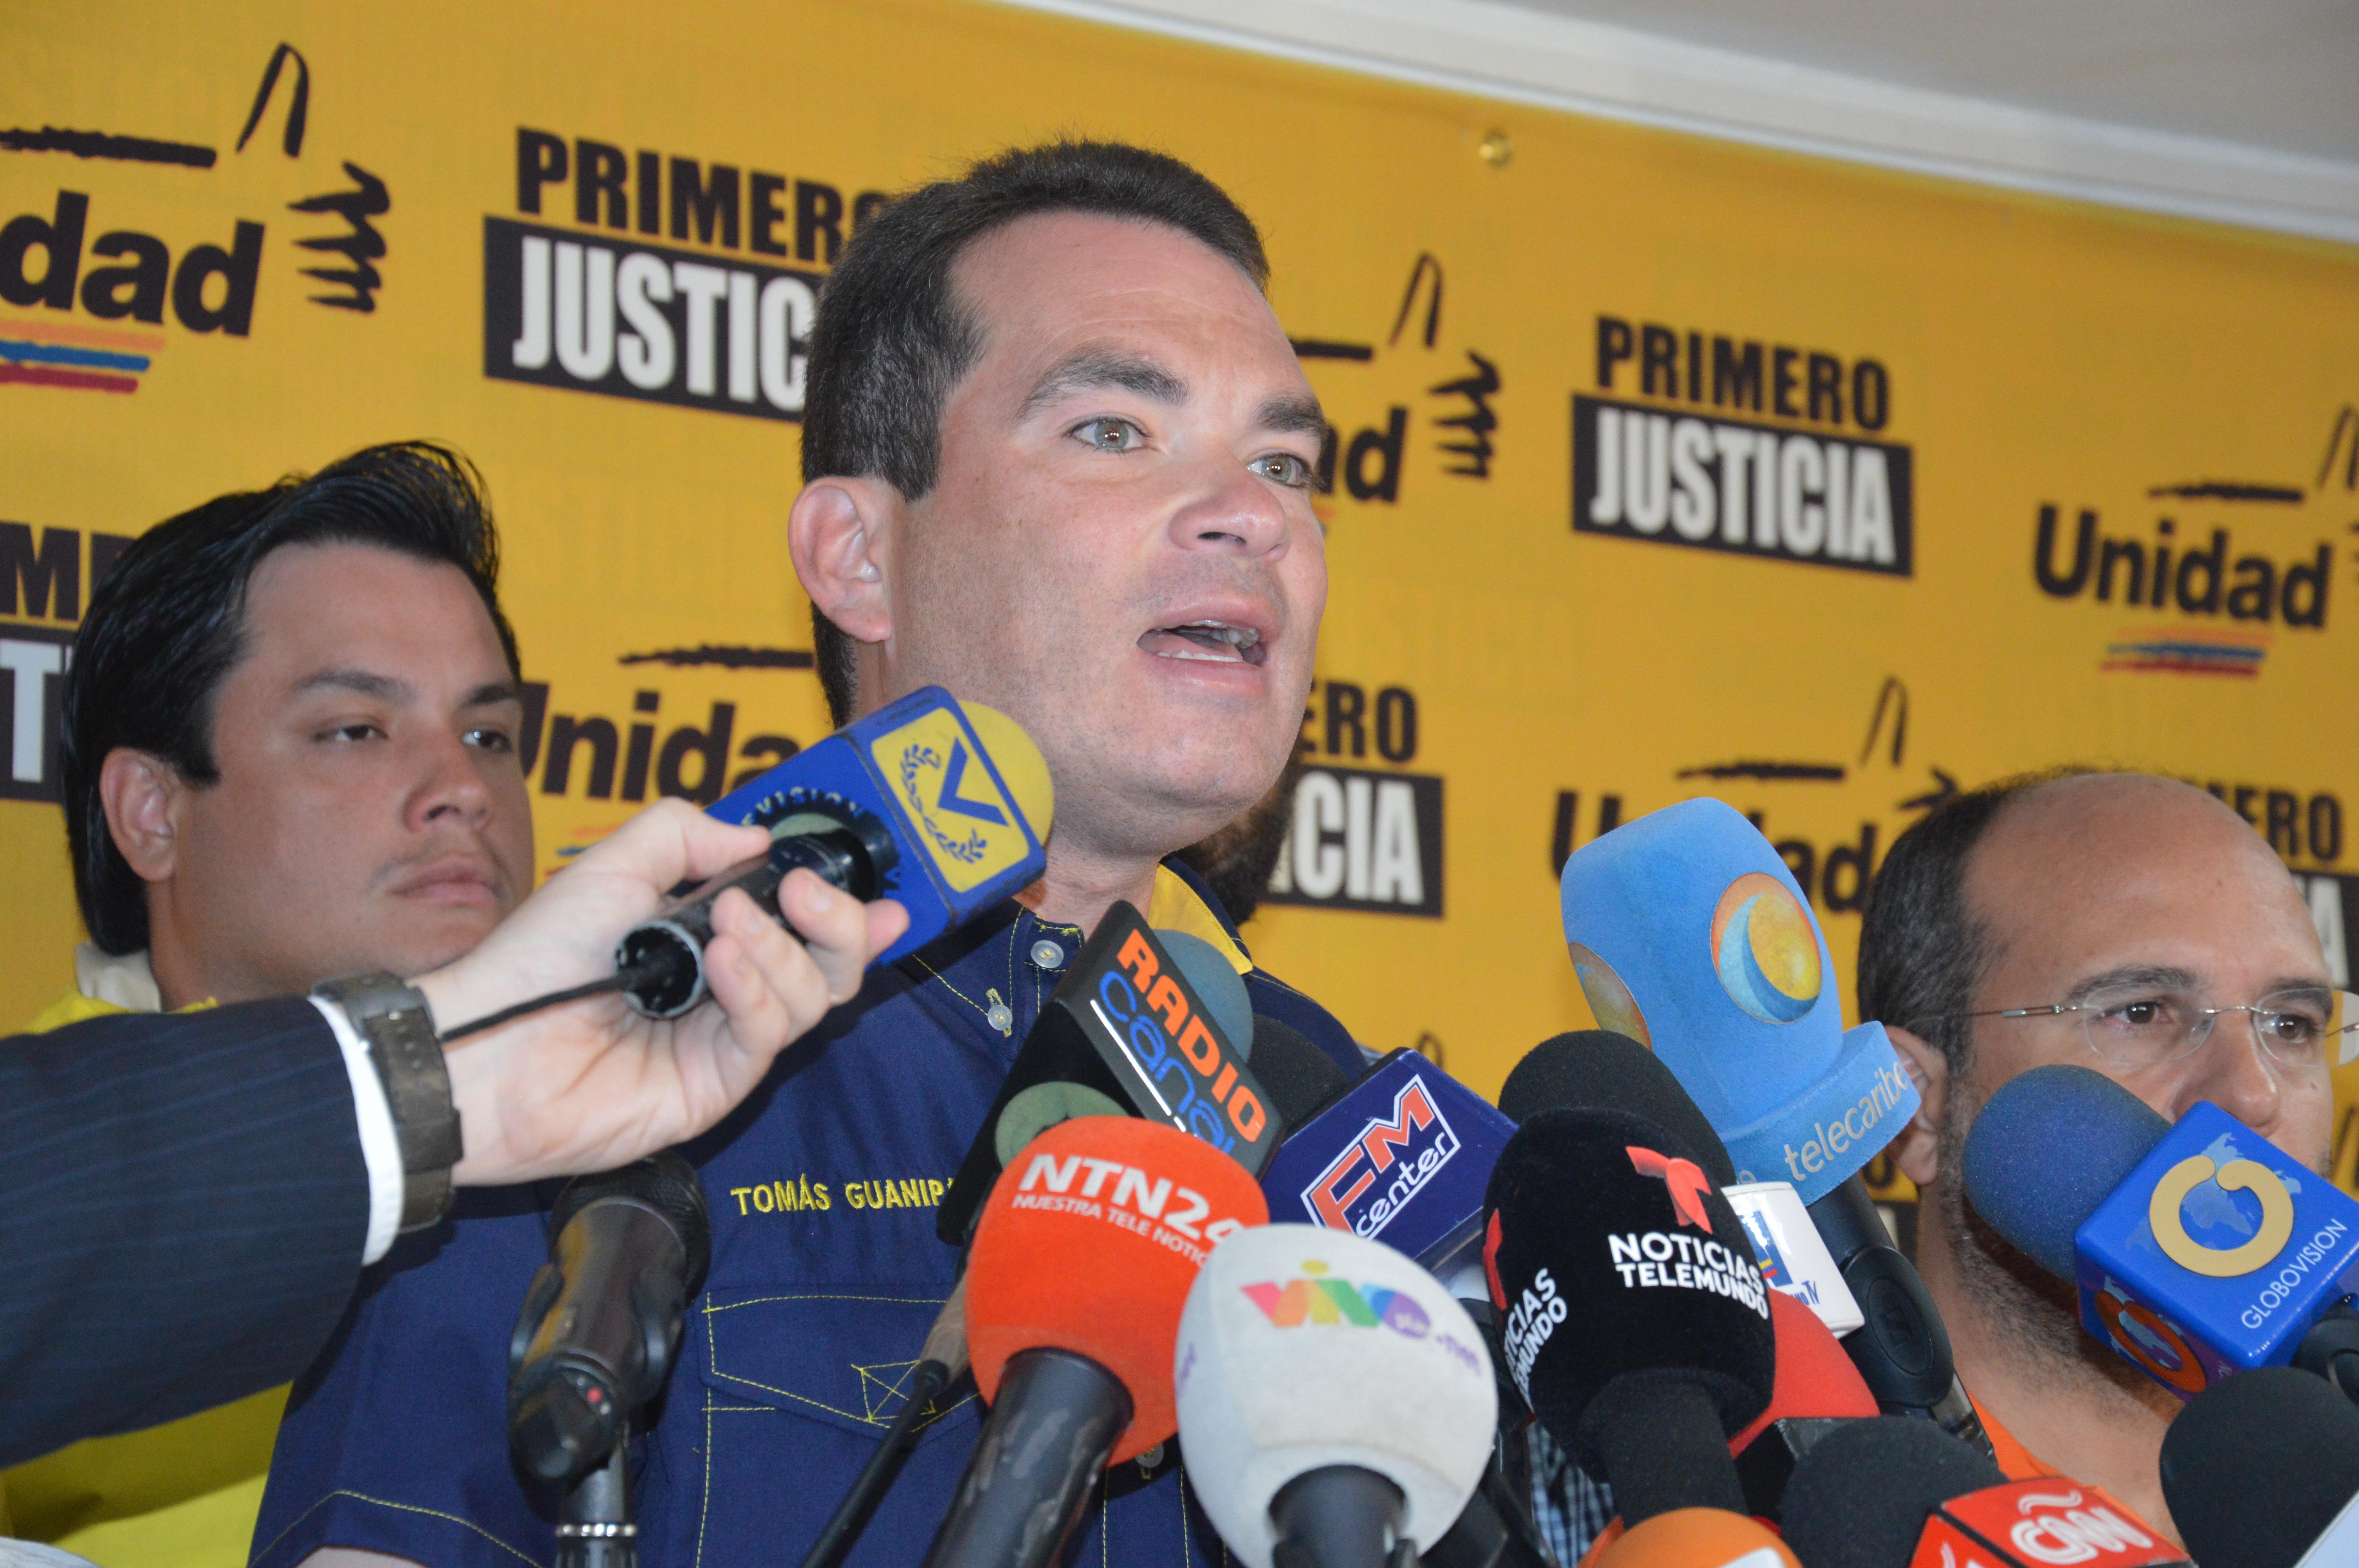 Guanipa manifestó que Maduro "perdió la perspectiva" al "amenazar" a quienes defienden los ddhh en el país por denunciar supuestas torturas por parte de las autoridades/ Foto: Archivo